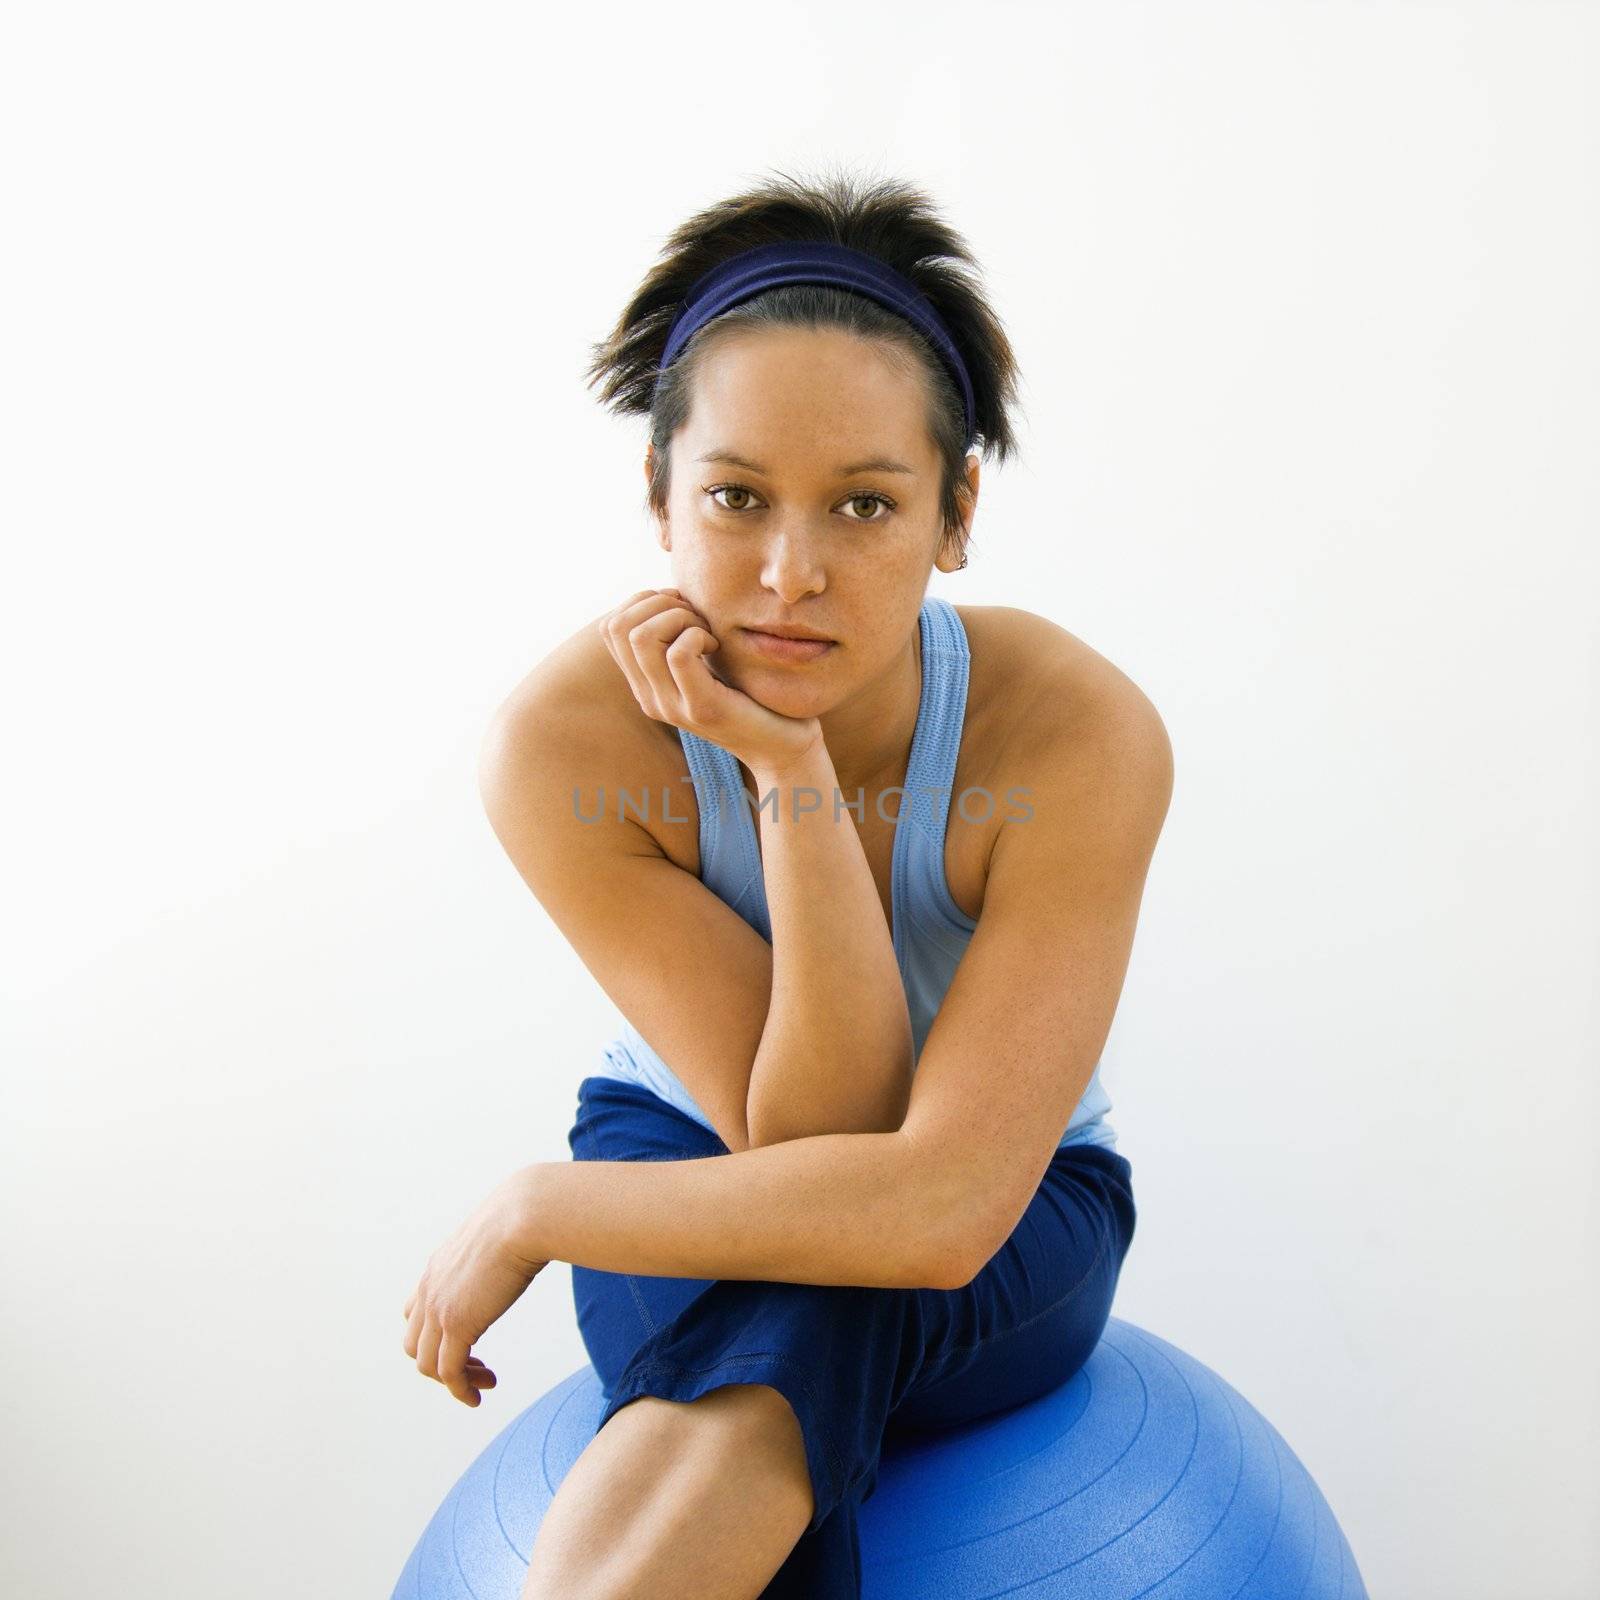 Fitness woman portrait by iofoto